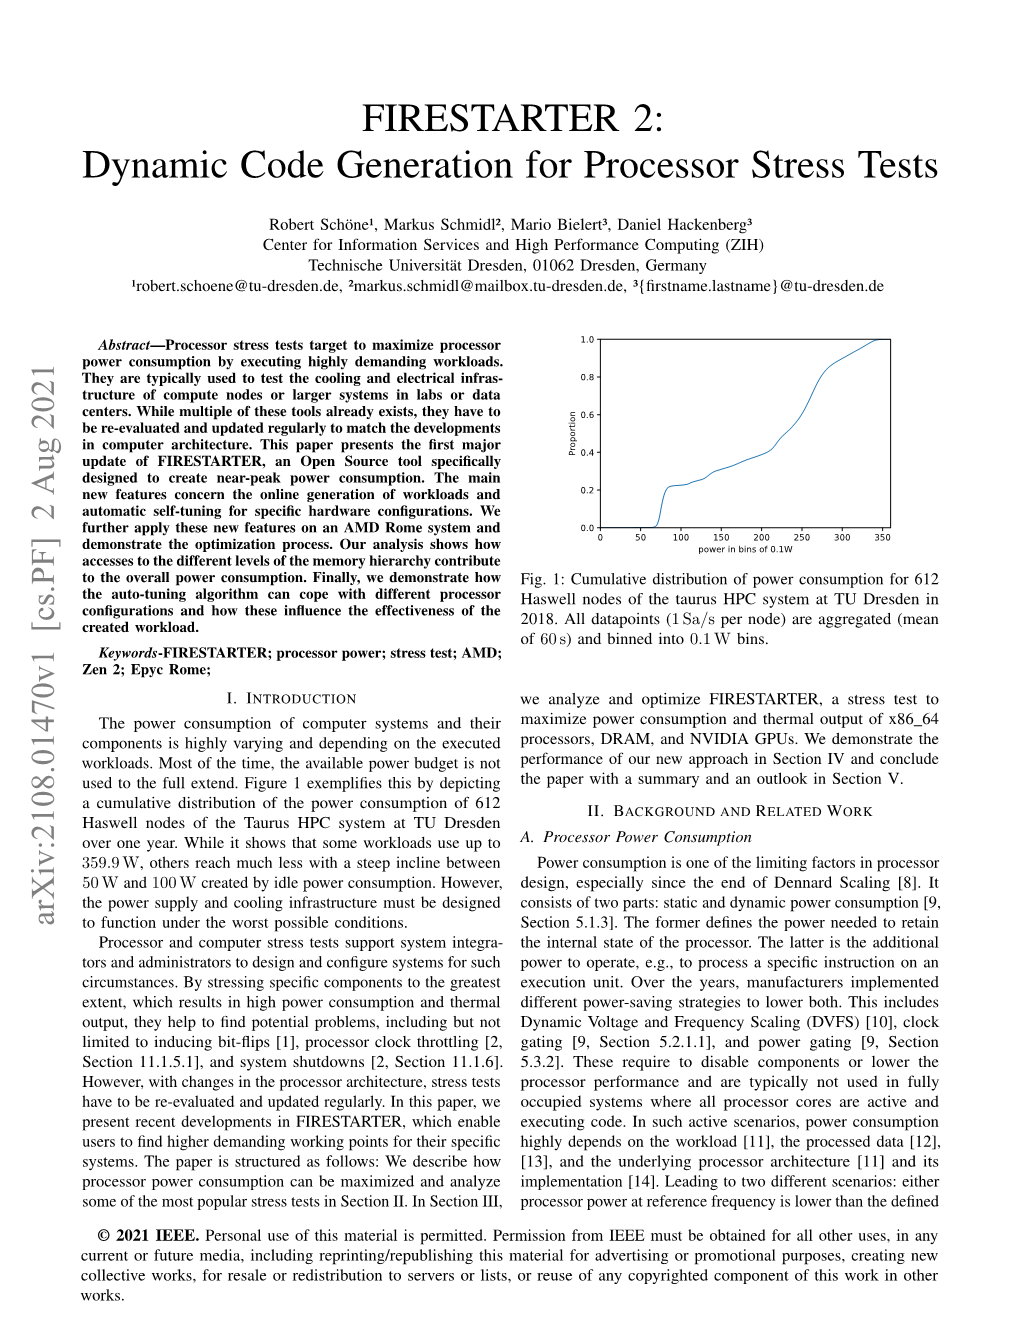 FIRESTARTER 2: Dynamic Code Generation for Processor Stress Tests